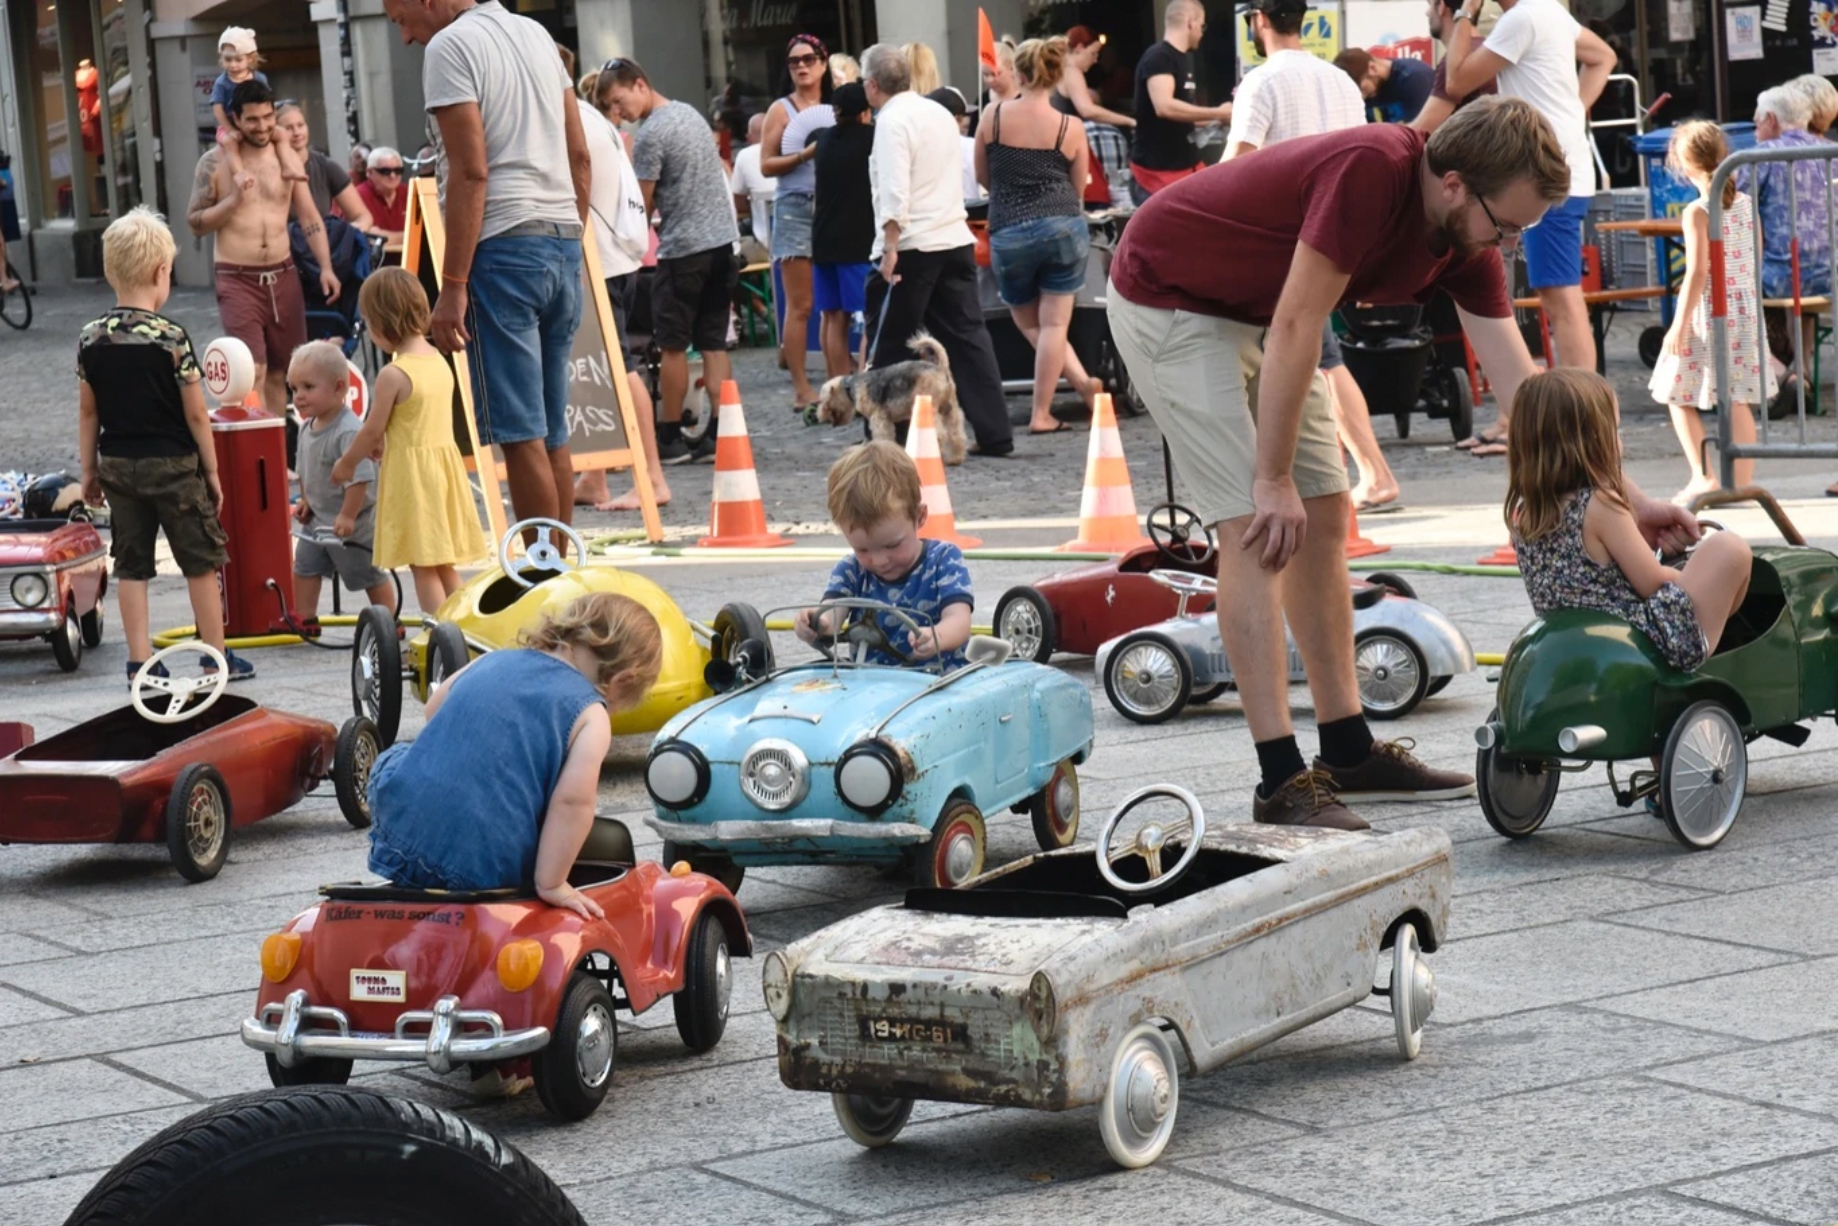 Tretauto Impressionen, Spiele i de Gass, diverse Kinder mit Tretautos in der Altstadt